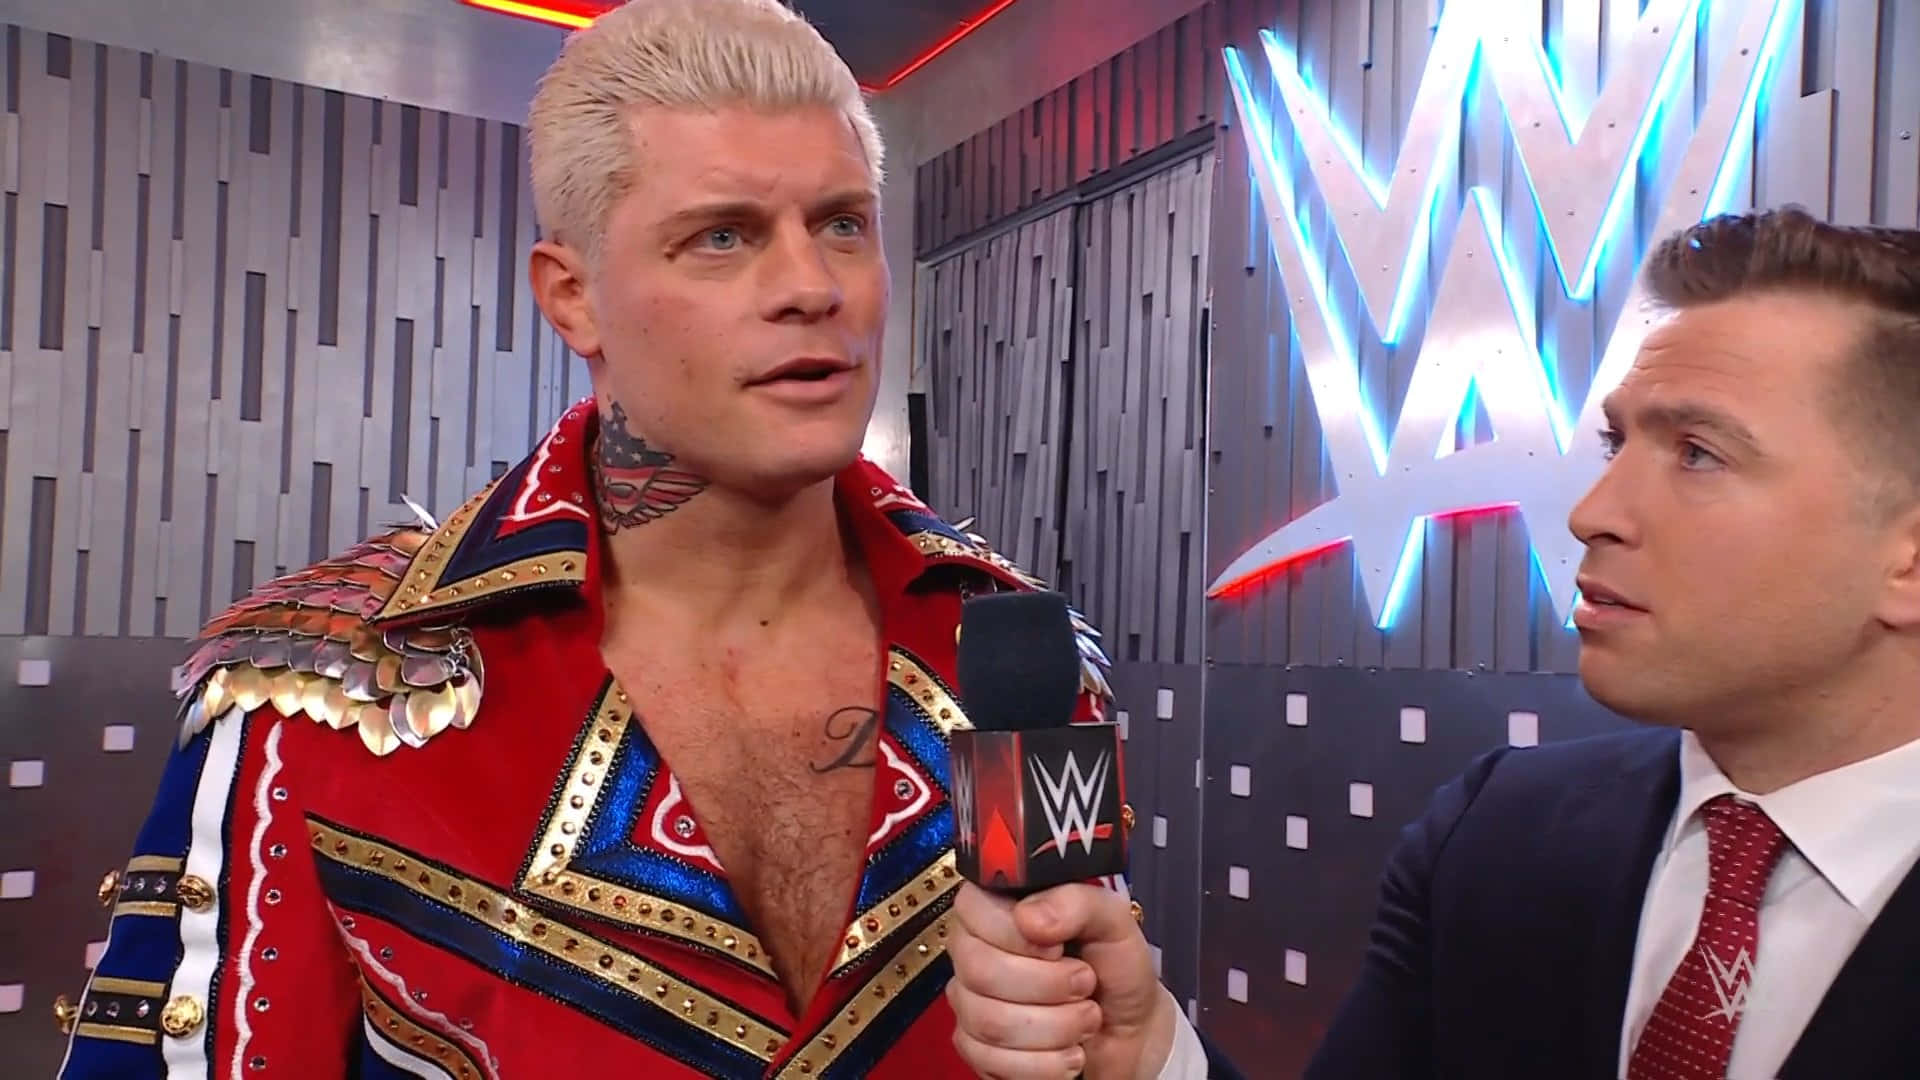 WWE Wrestler Cody Rhodes during an engaging interview. Wallpaper